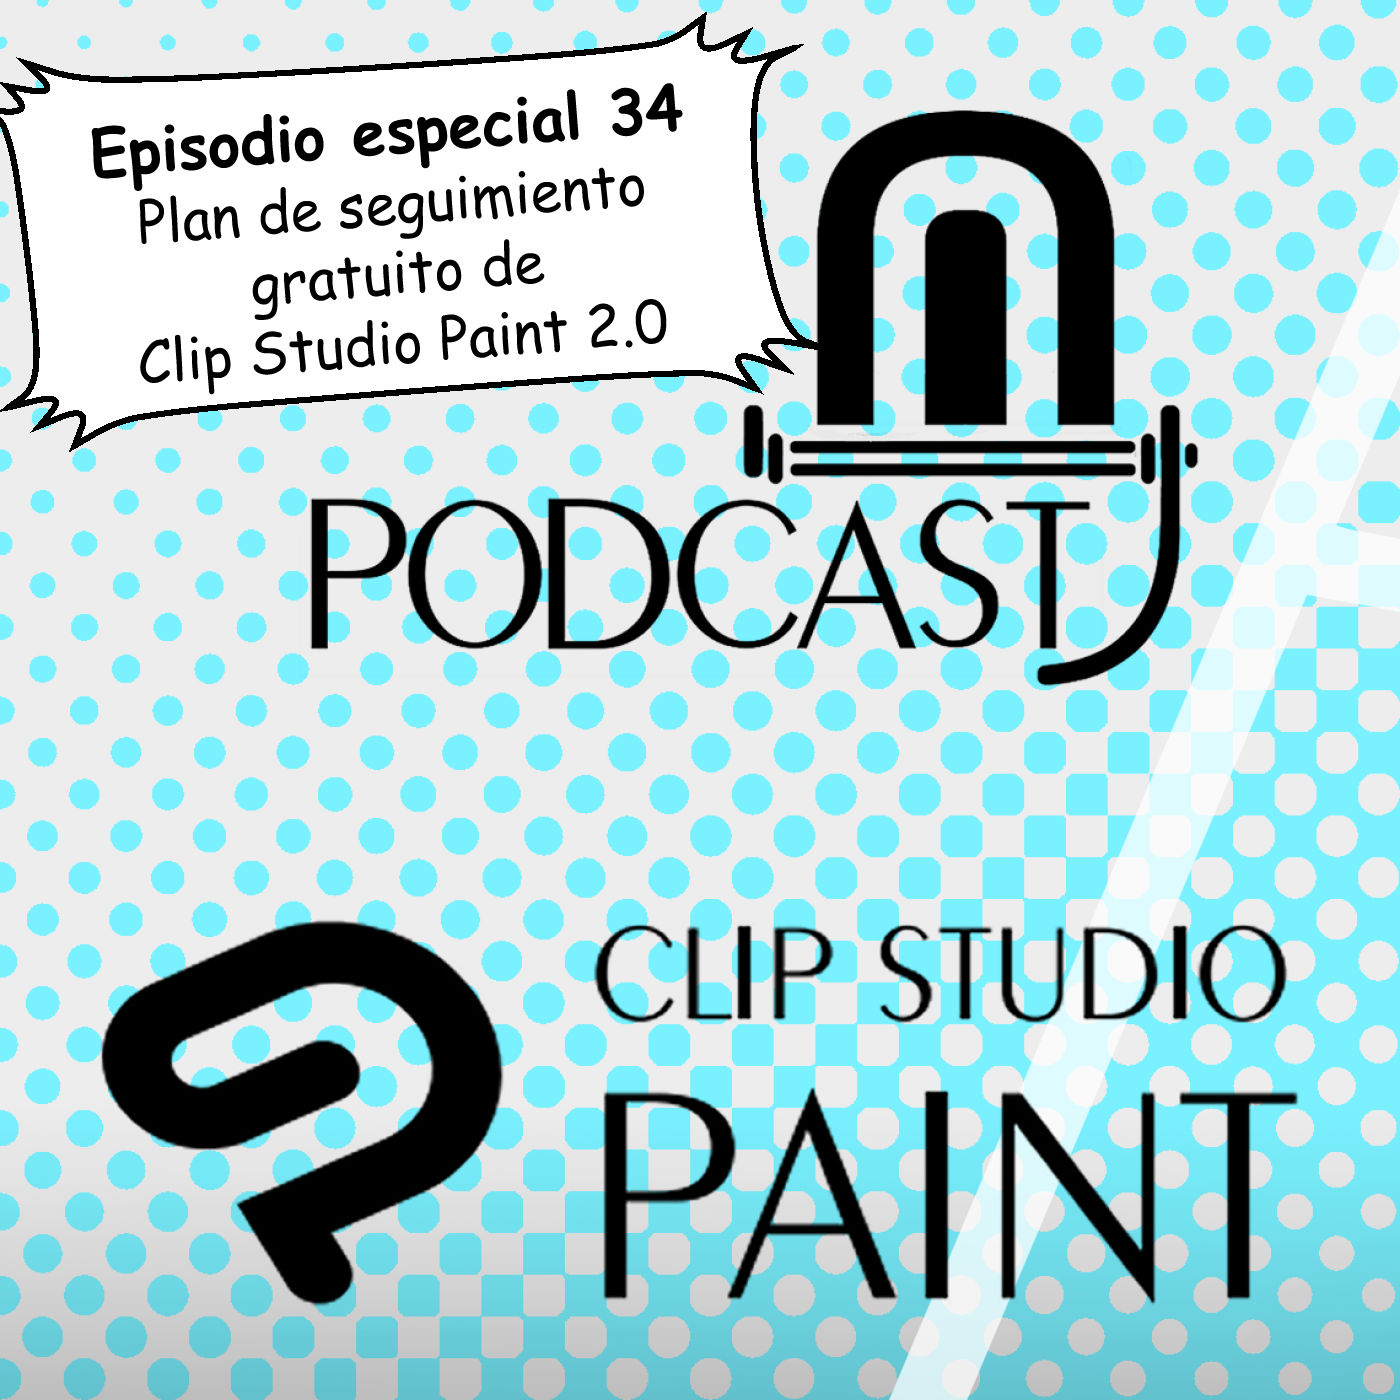 CSP especial 34. Clip Studio Paint 2.0 GRATIS para estudiantes y personas de escasos recursos